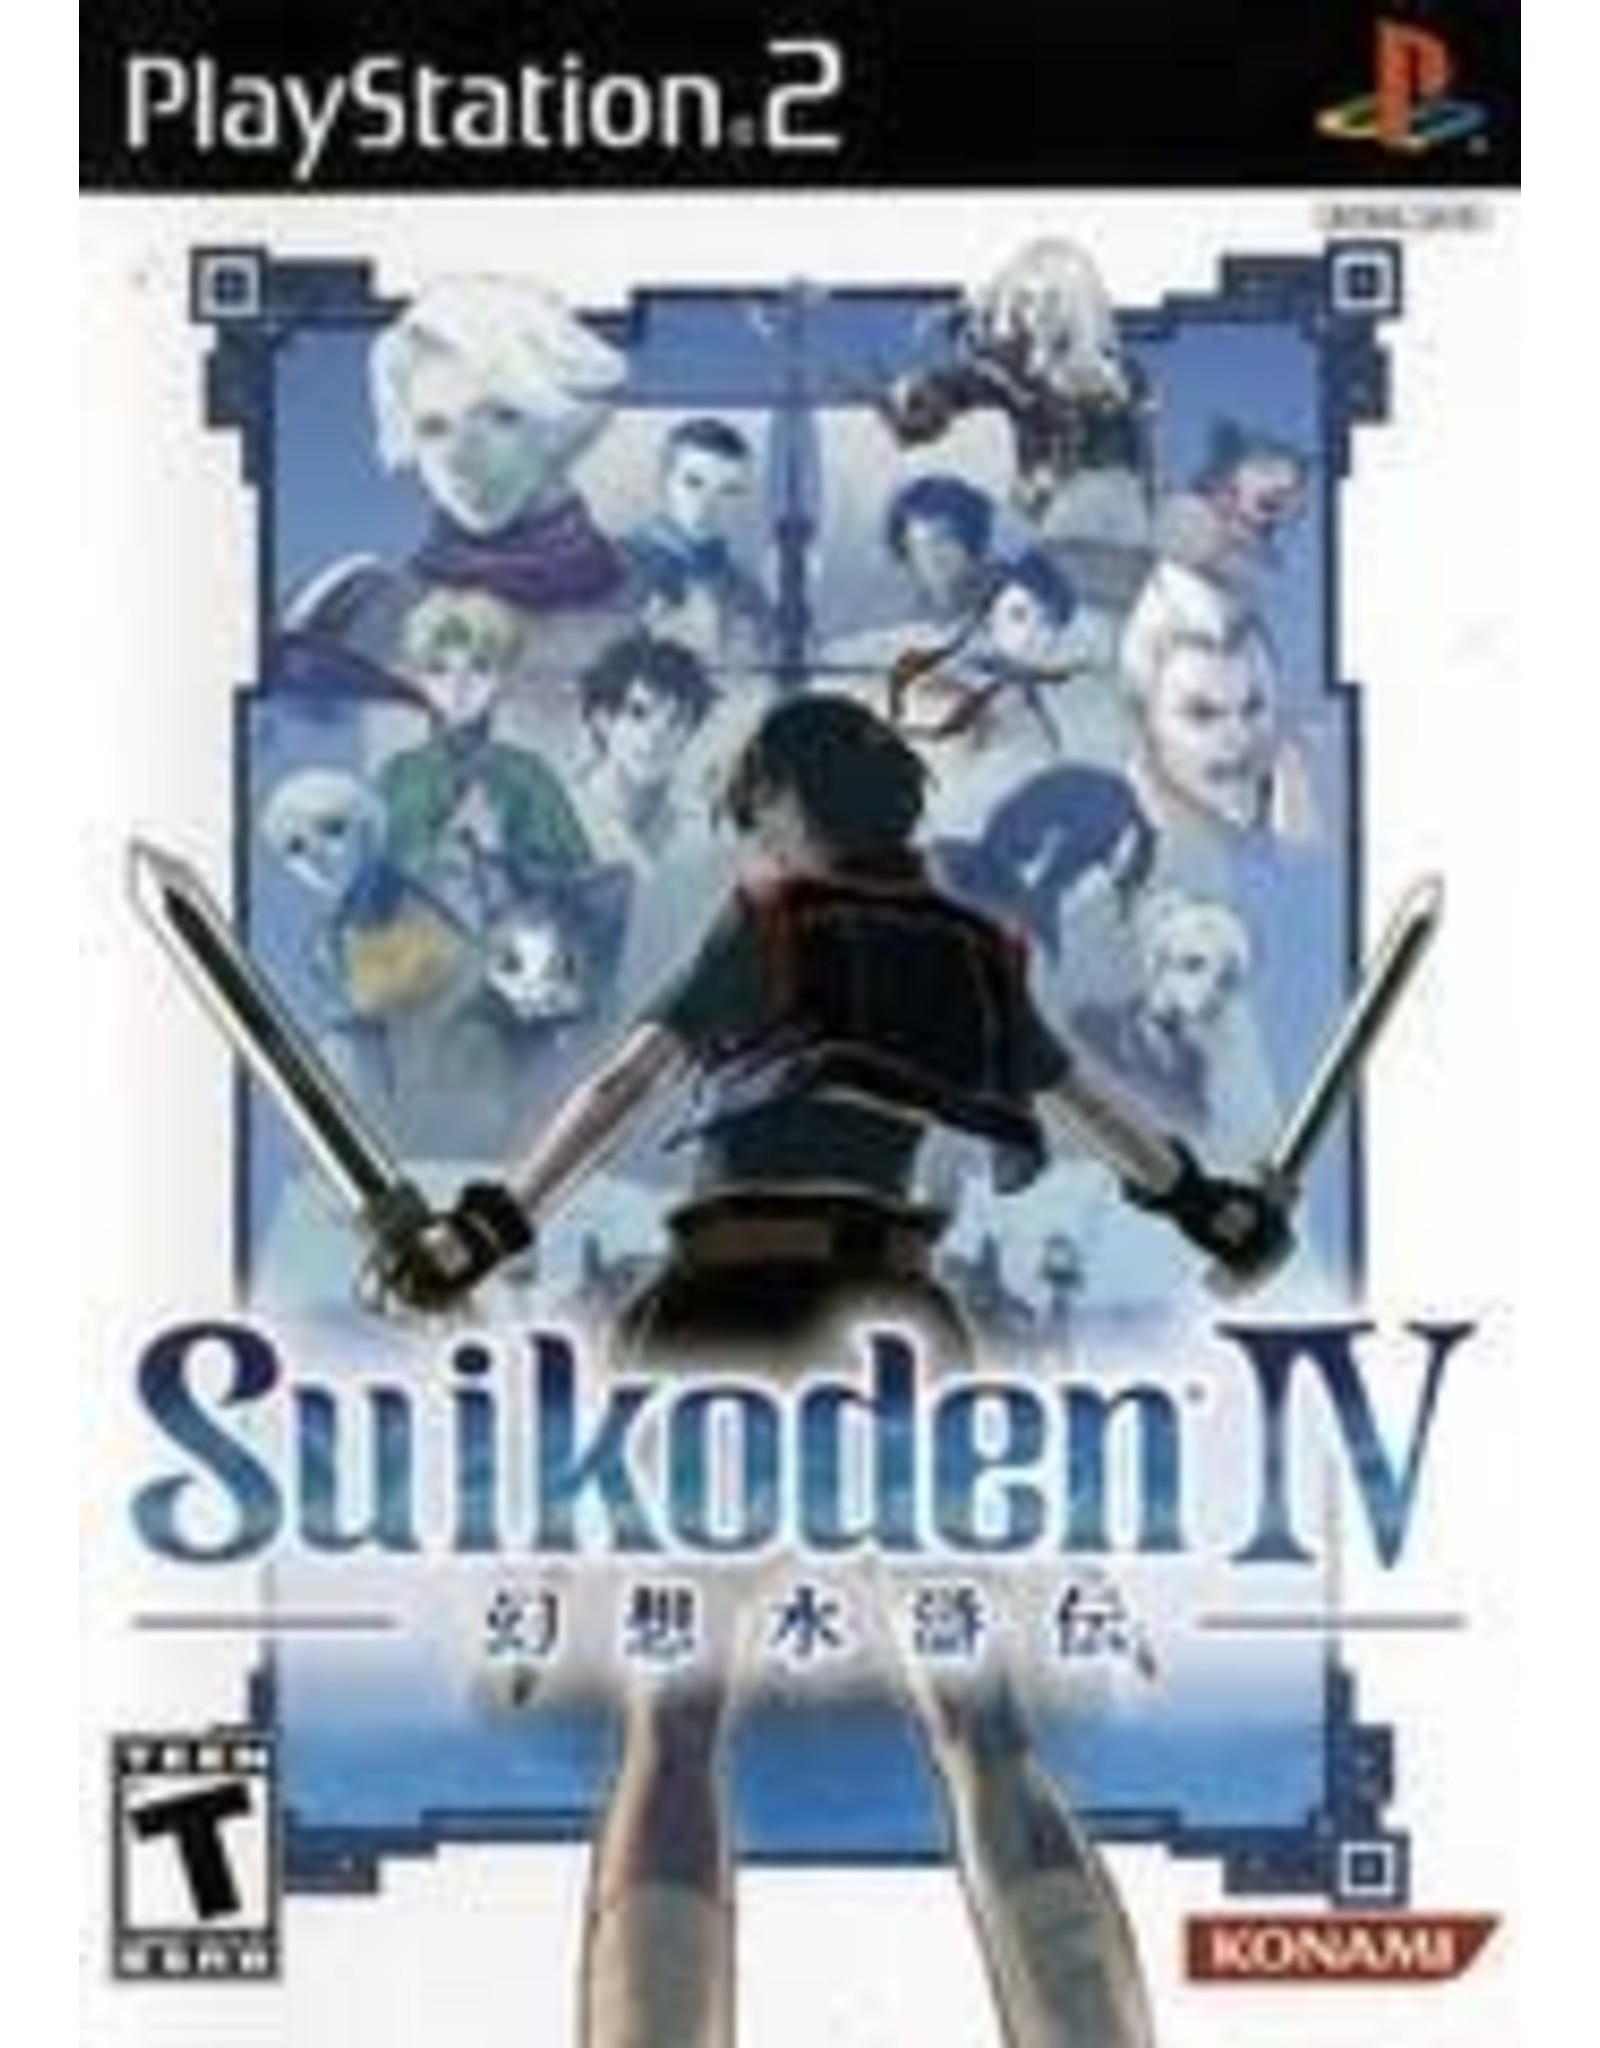 Playstation 2 Suikoden IV (No Manual)